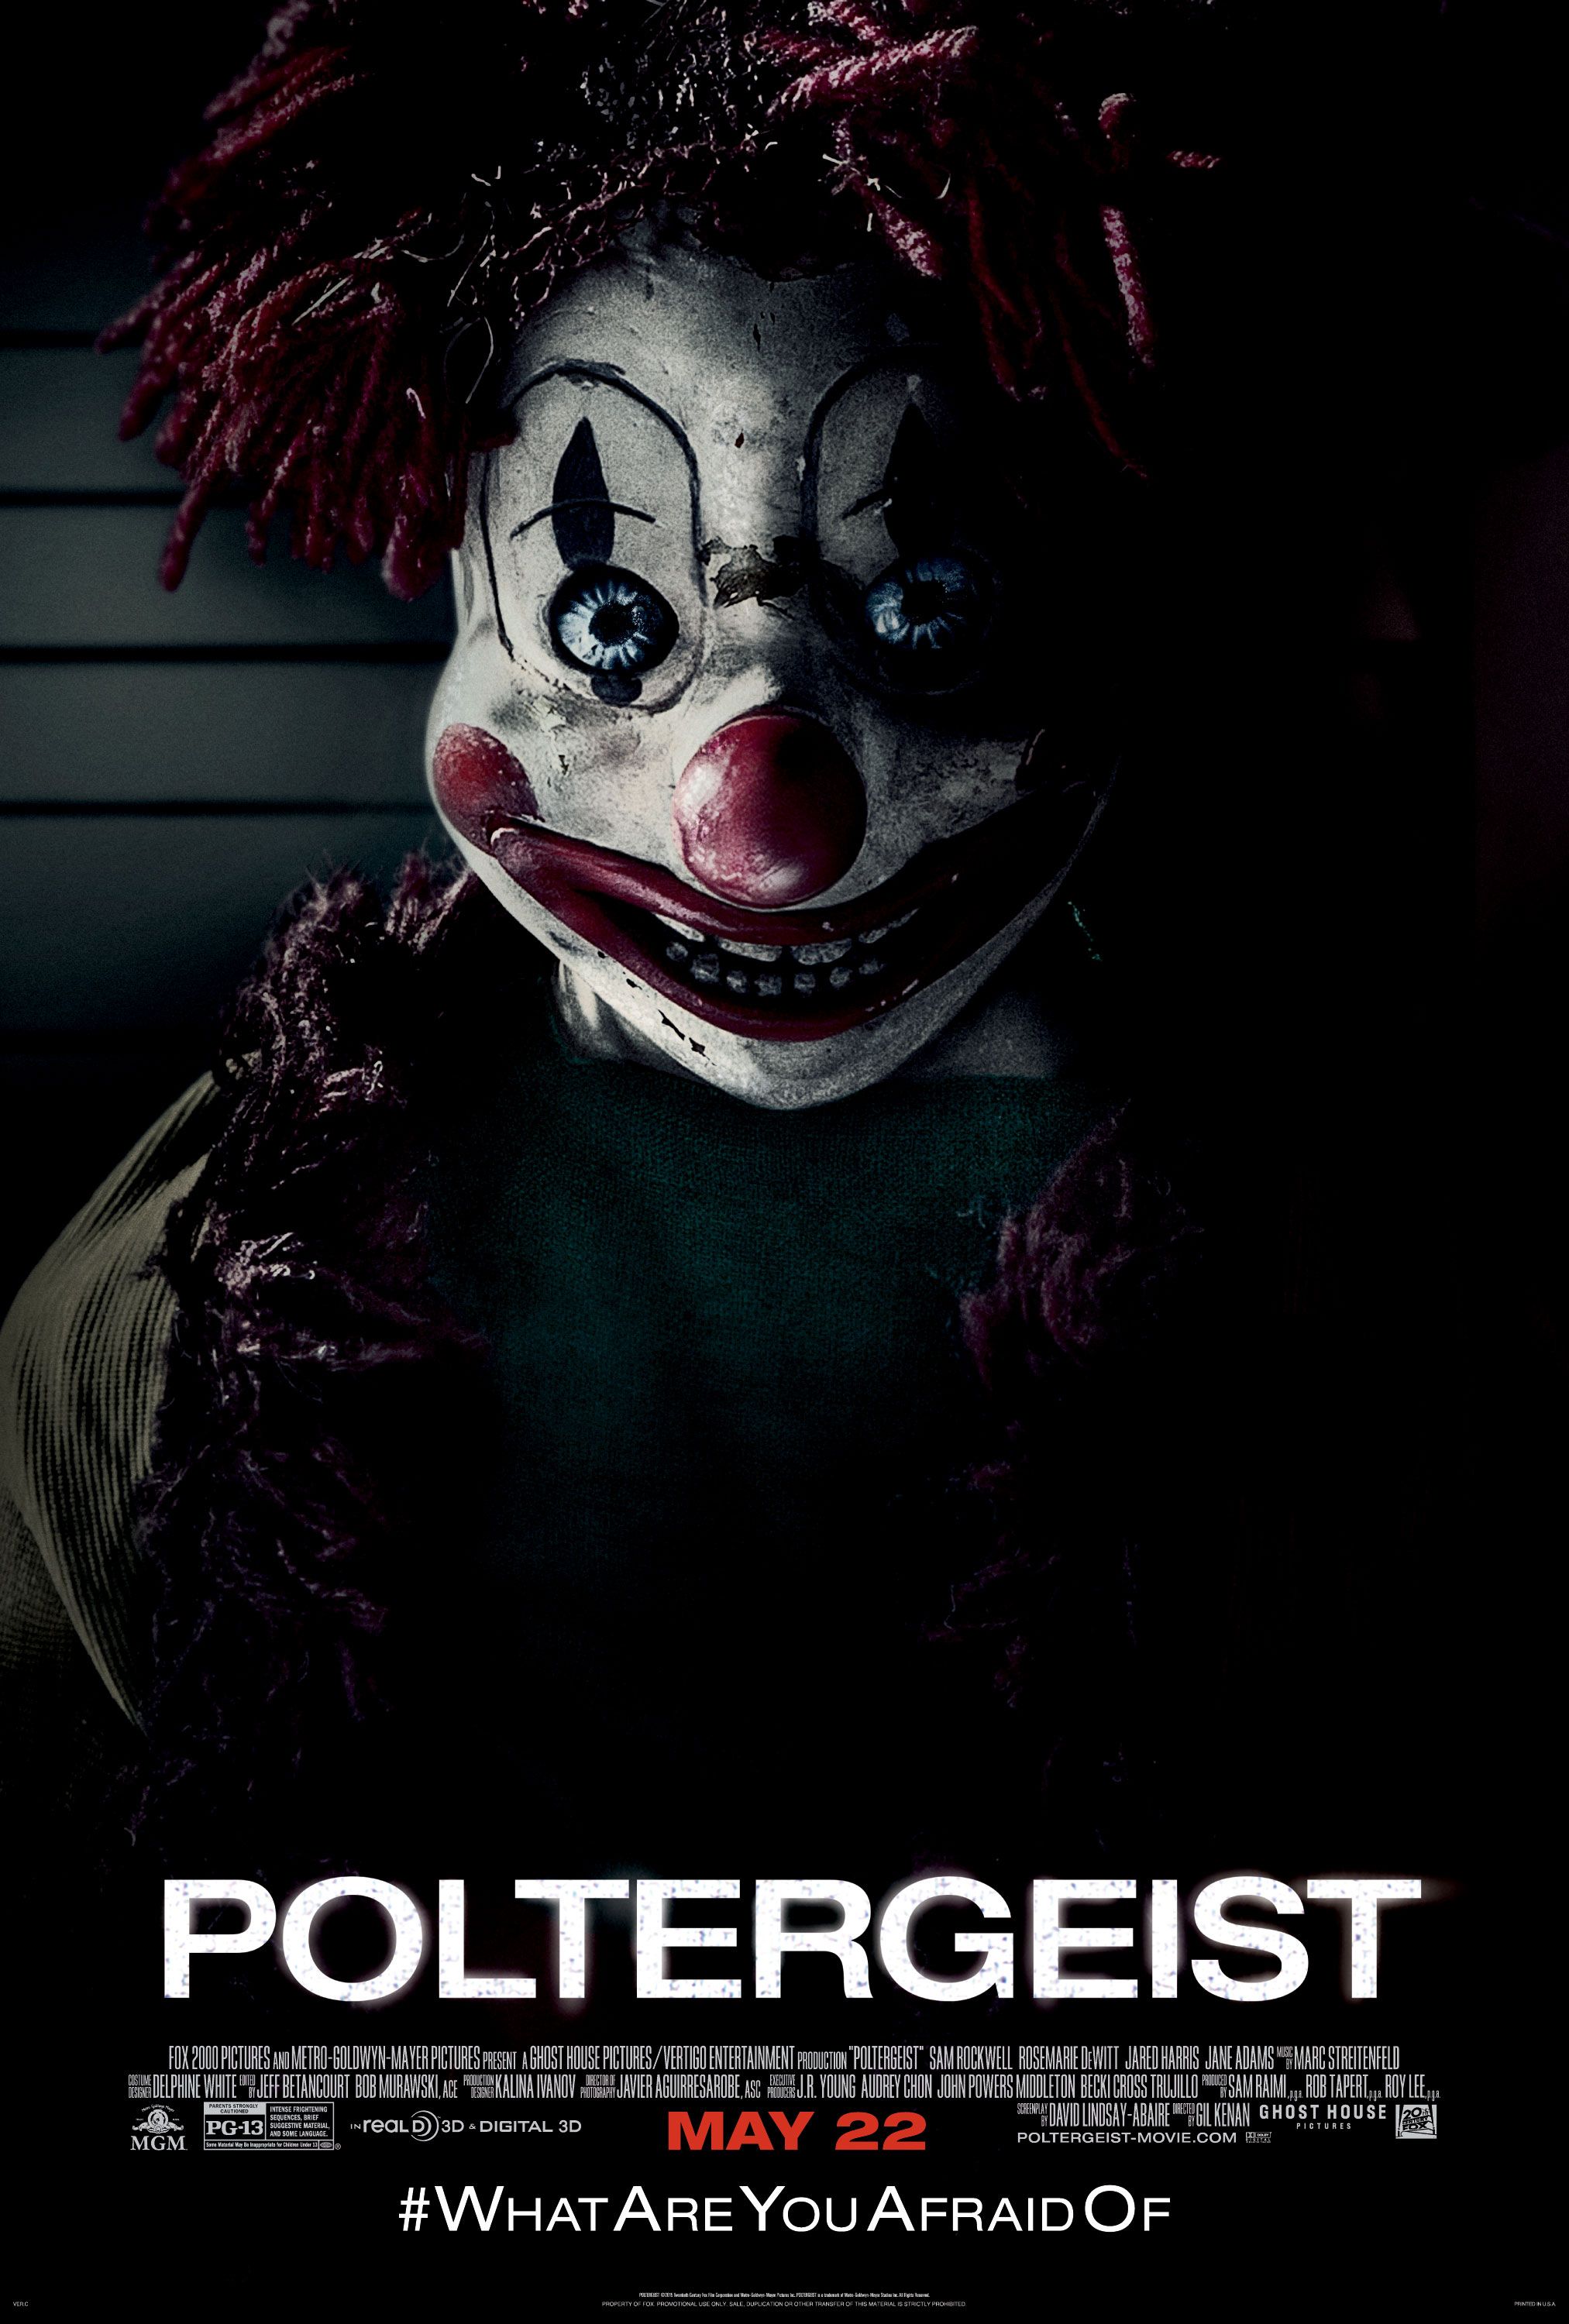 Poltergeist (2015) Hindi Dubbed Full Movie